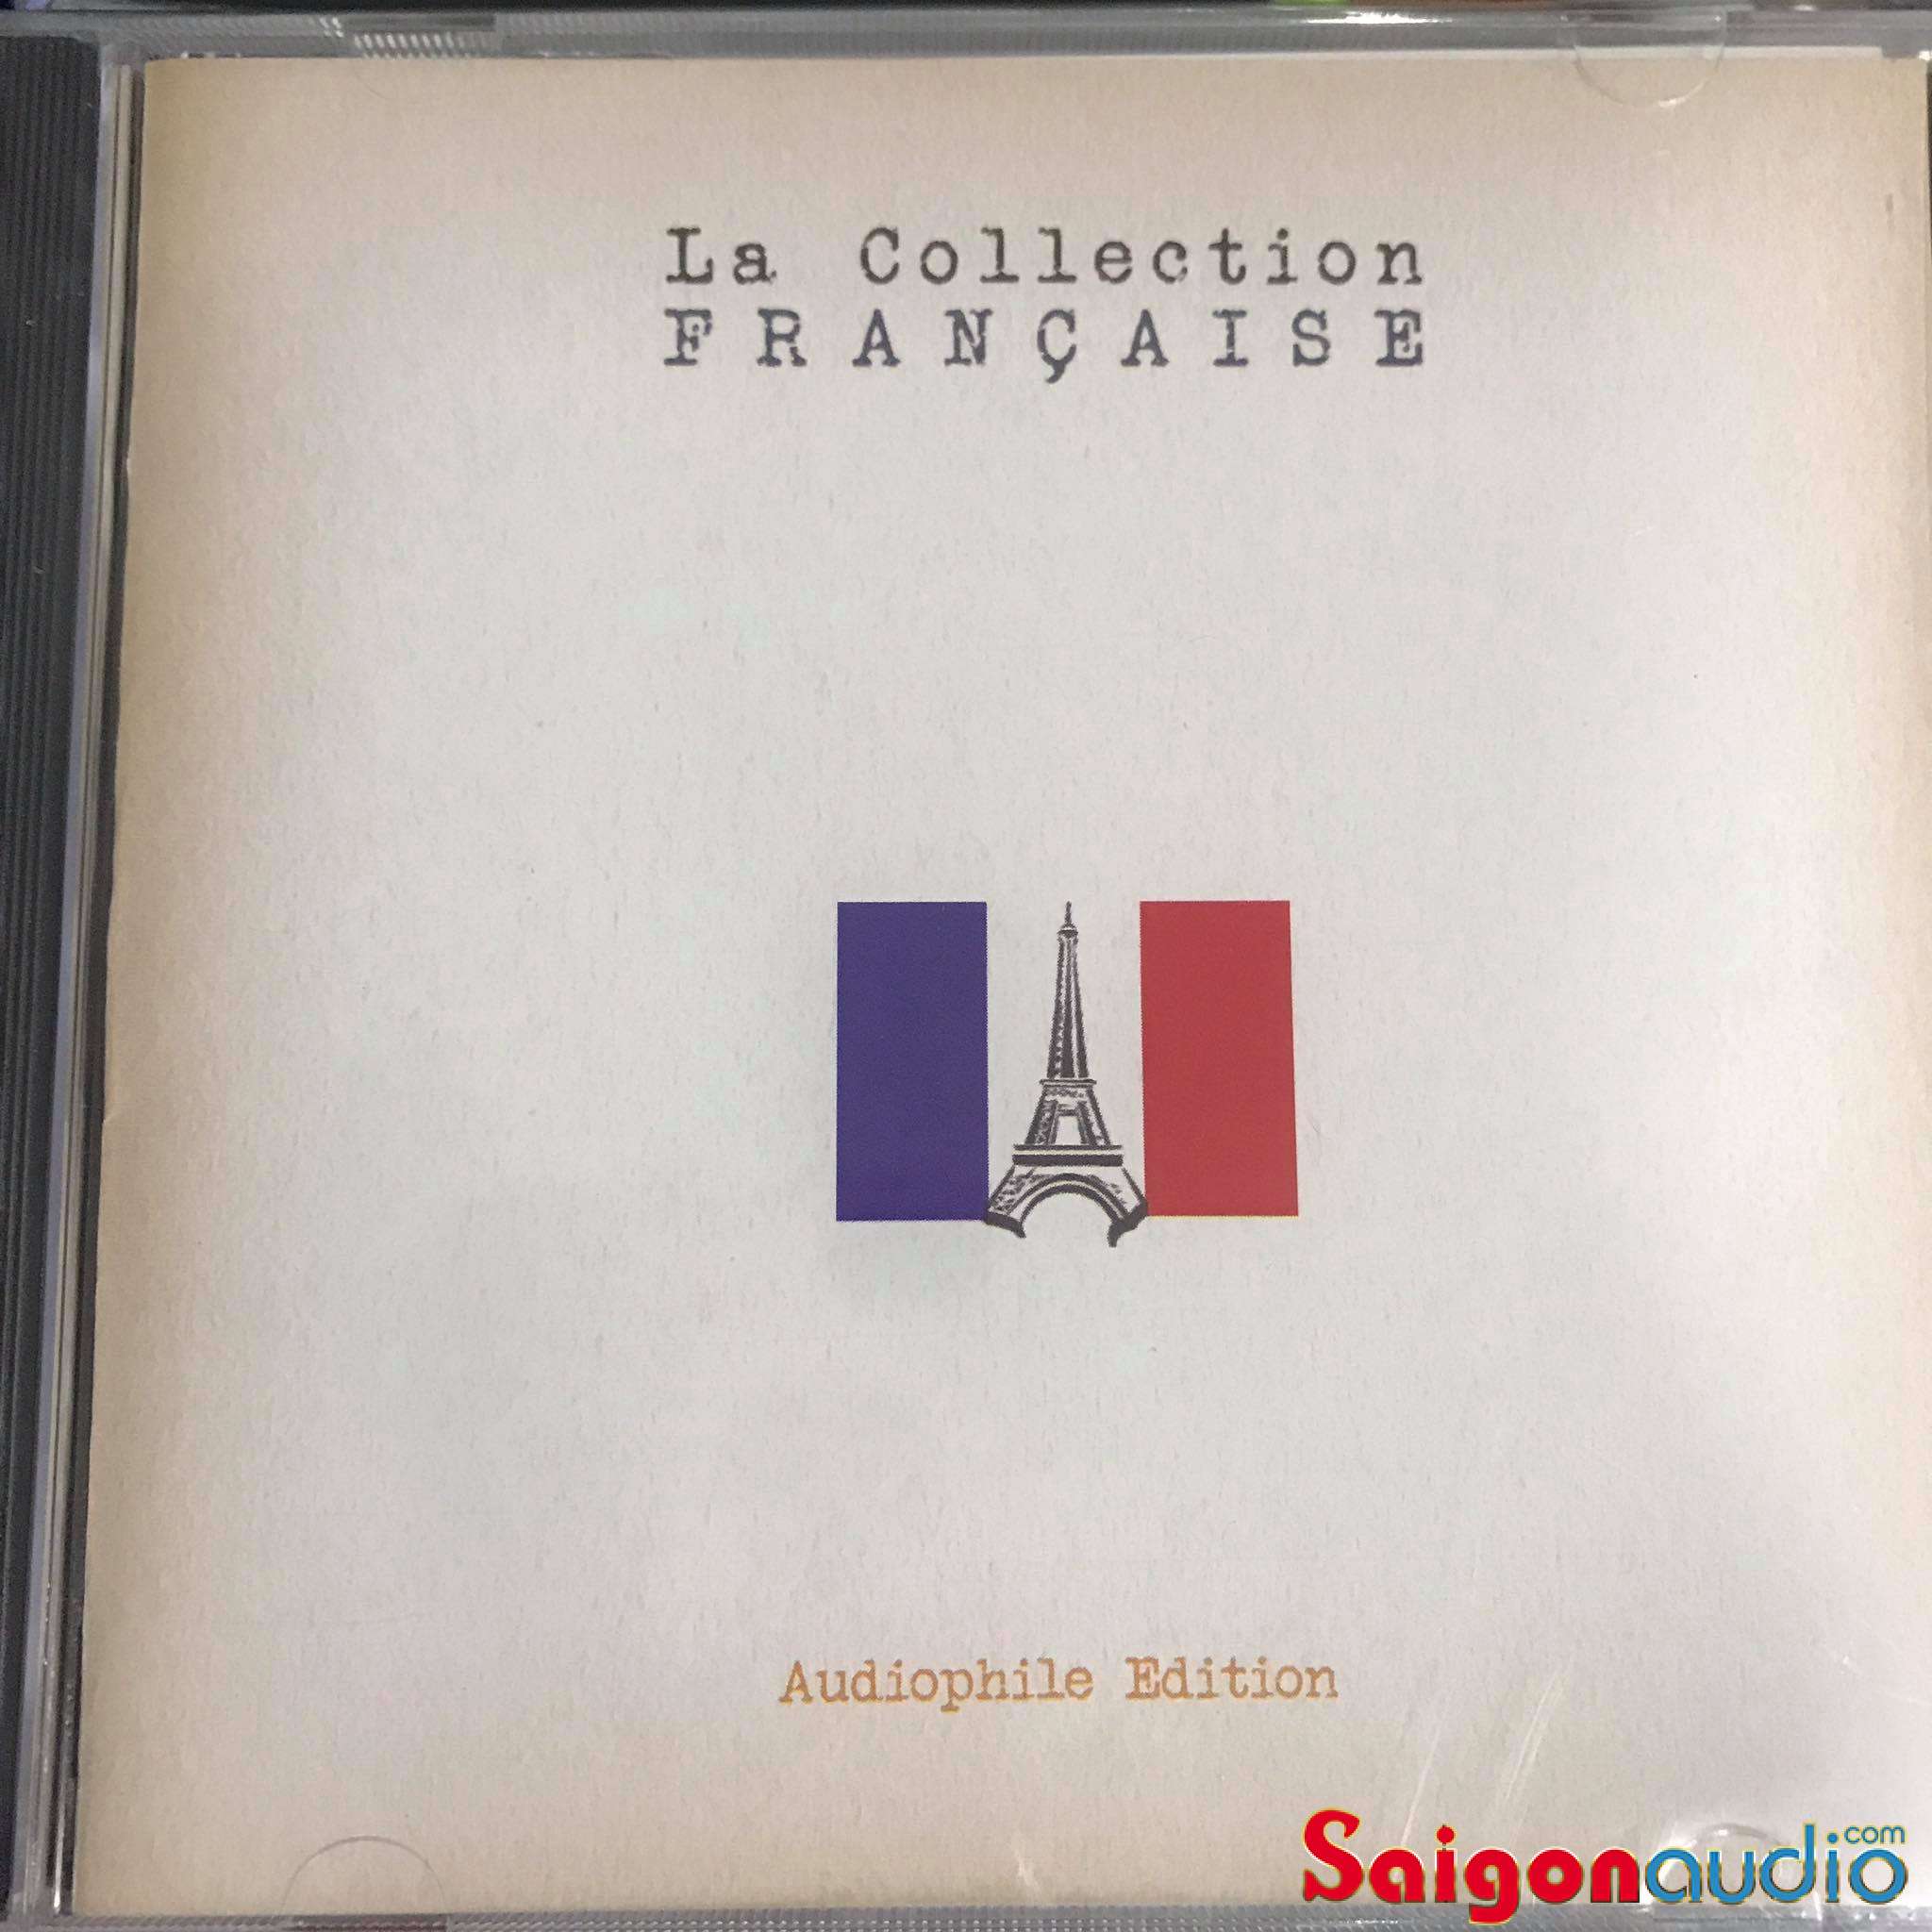 Đĩa CD nhạc La Collection Francaise - Audiphile Edition (Free ship khi mua 2 đĩa CD cùng hoặc khác loại)